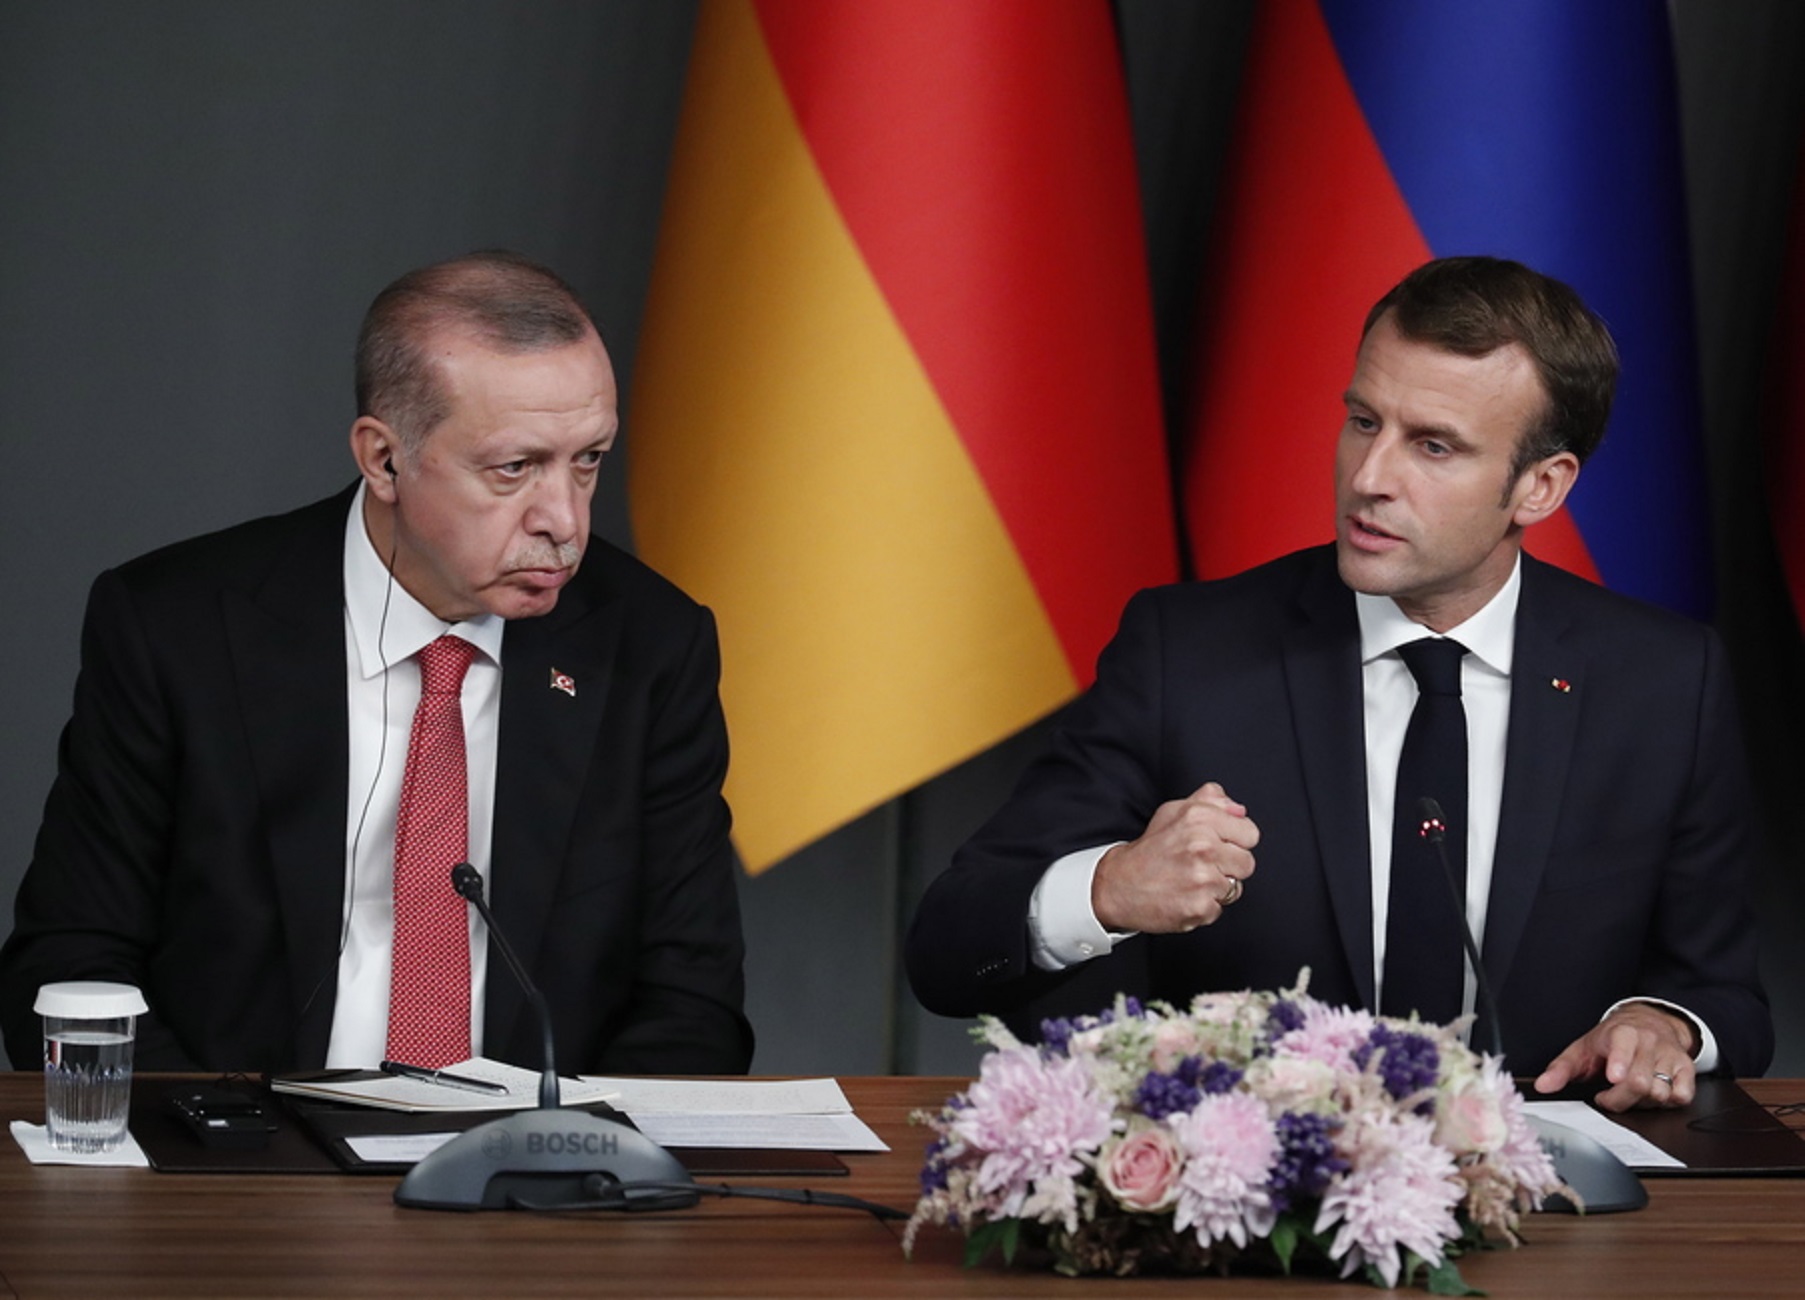 Ο Ε.Μακρόν συνεχάρη τον Ρ.Τ.Ερντογάν: «Γαλλία και Τουρκία έχουν να αντιμετωπίσουν μαζί τεράστιες προκλήσεις»